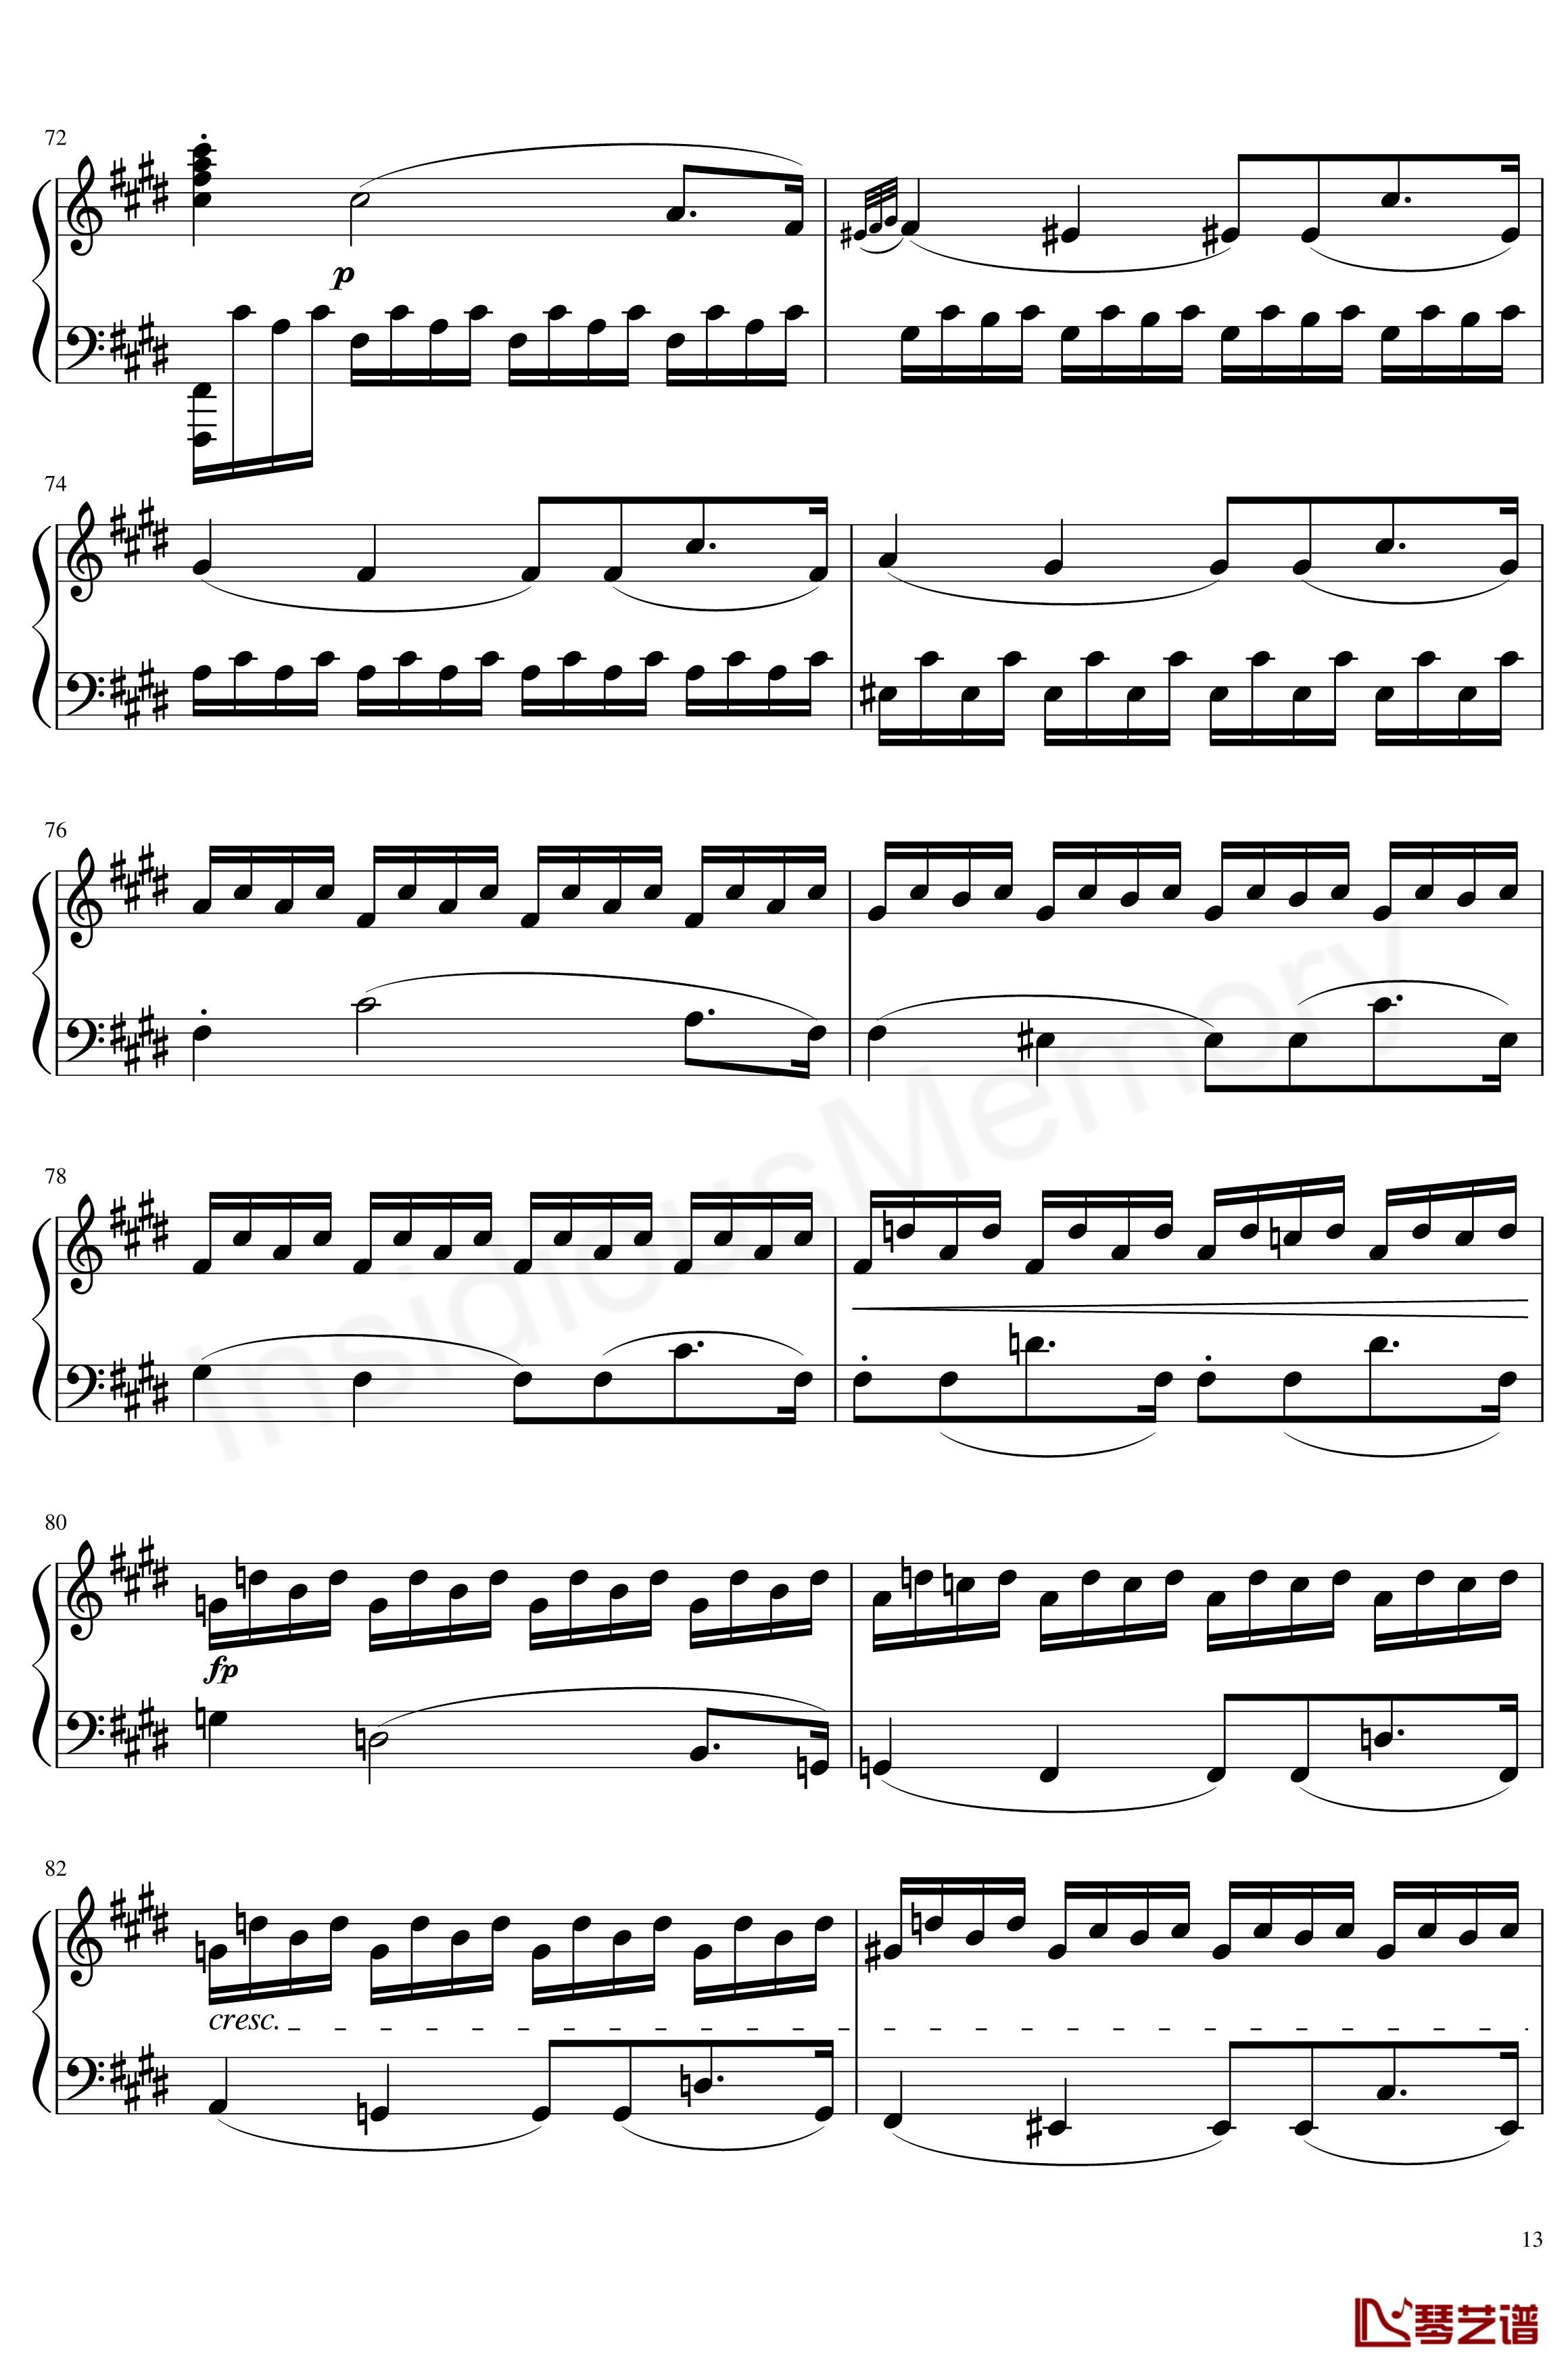 月光奏鸣曲钢琴谱-贝多芬-beethoven13